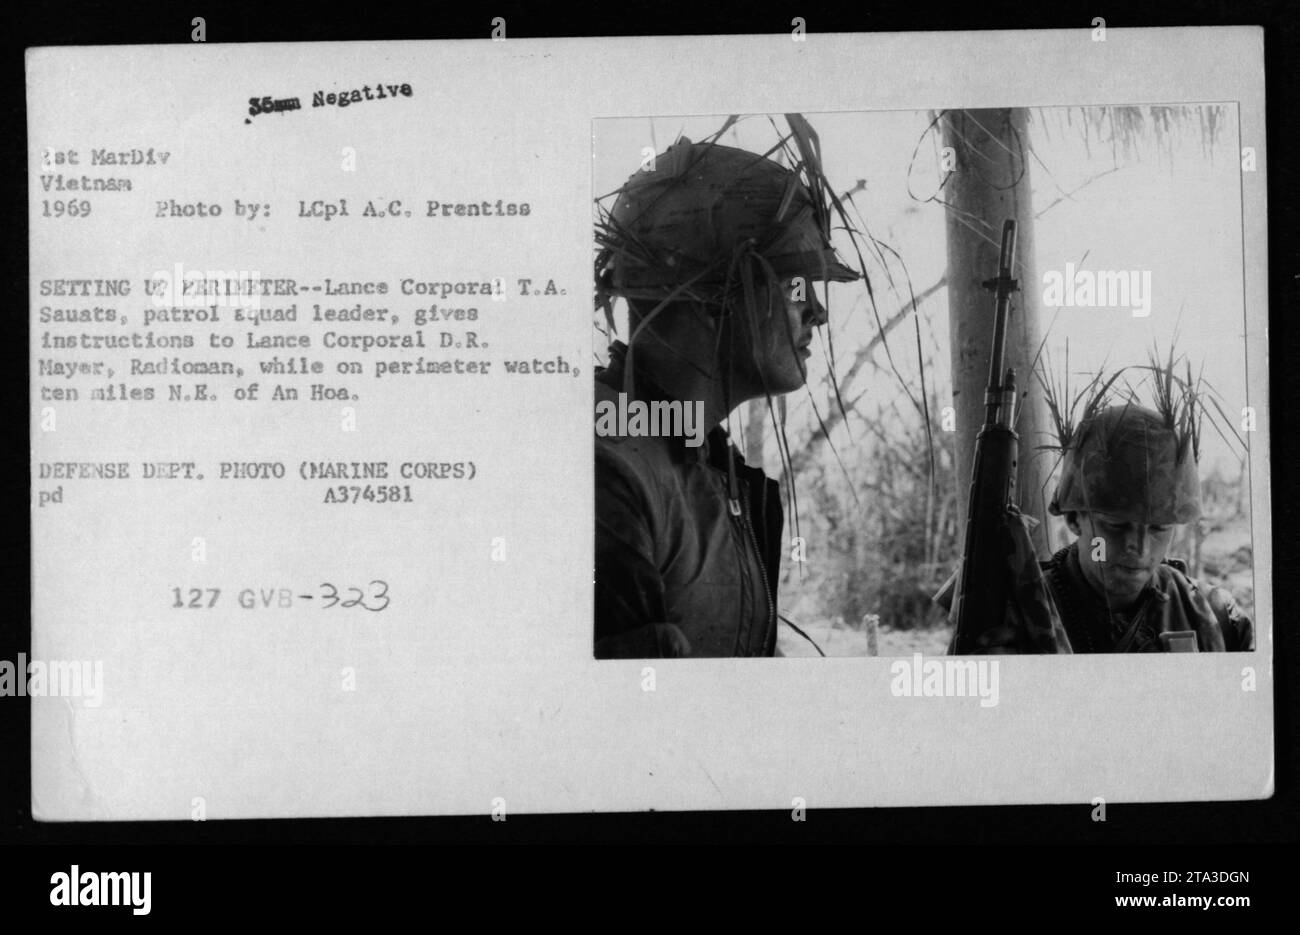 Lance Corporal T.A. Sauats, Leiter der Patrouilleneinheit, gibt Anweisungen an Lance Corporal D.R. Mayer, Radioman, während er auf Perimeterüberwachung ist, zehn Meilen nordöstlich von an Hoa. Dieses Foto zeigt die Sicherheitsmaßnahmen, die 1969 vom 1. MarDiv in Vietnam umgesetzt wurden. Foto von LCpl A.C. Prentiss. Verteidigungsabteilung Foto (Marine Corps) A374581 pd 127 GVB-323. Stockfoto